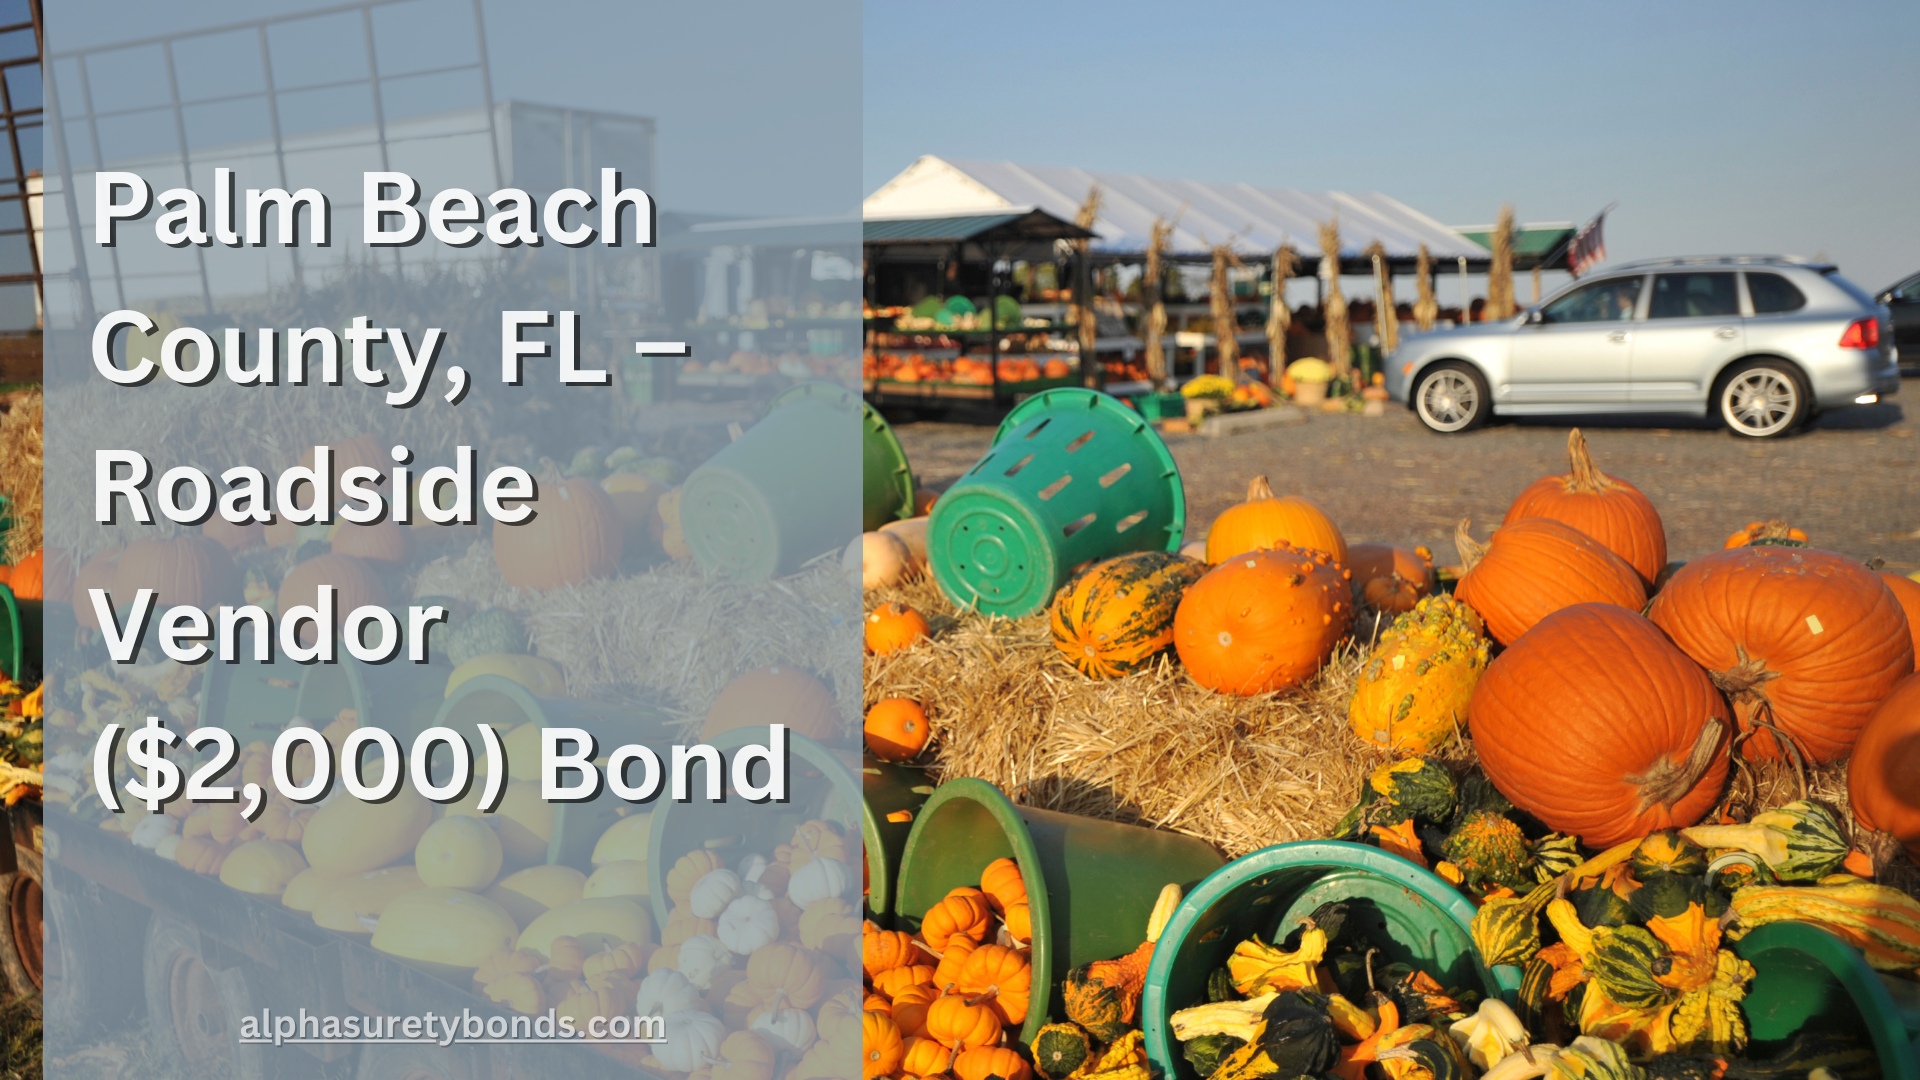 Palm Beach County, FL – Roadside Vendor ($2,000) Bond